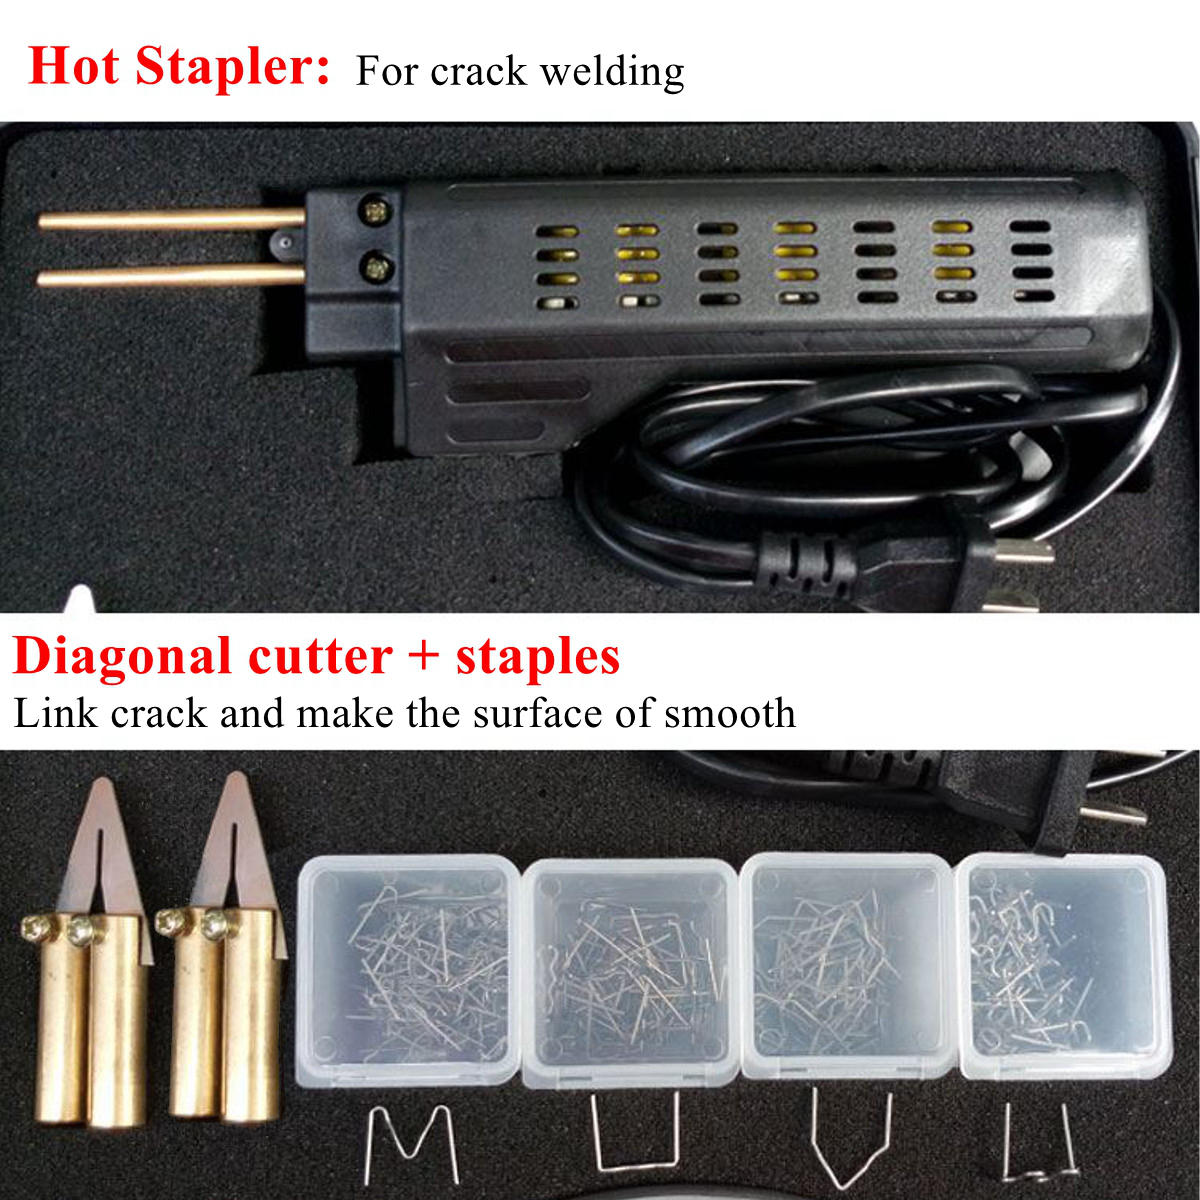 206 stuks hot stapler bumper fender kuip lasser plastic reparatie kitl